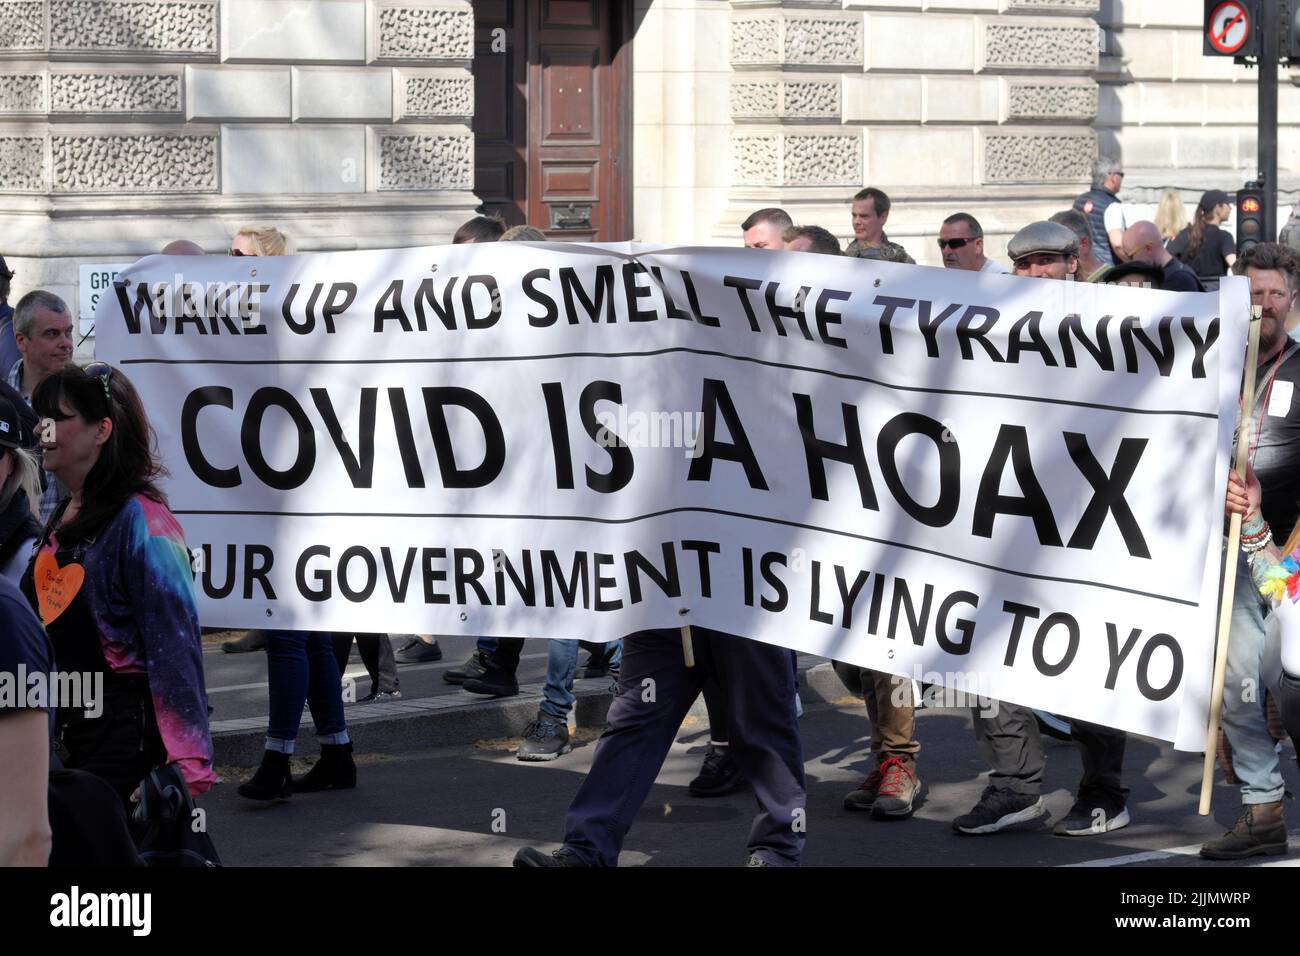 Londres, Royaume-Uni - 24 avril 2021 : manifestation « unissez-vous pour la liberté » par des sceptiques covid-19, des manifestants opposés au verrouillage, la vaccination, le port de masque, etc Banque D'Images